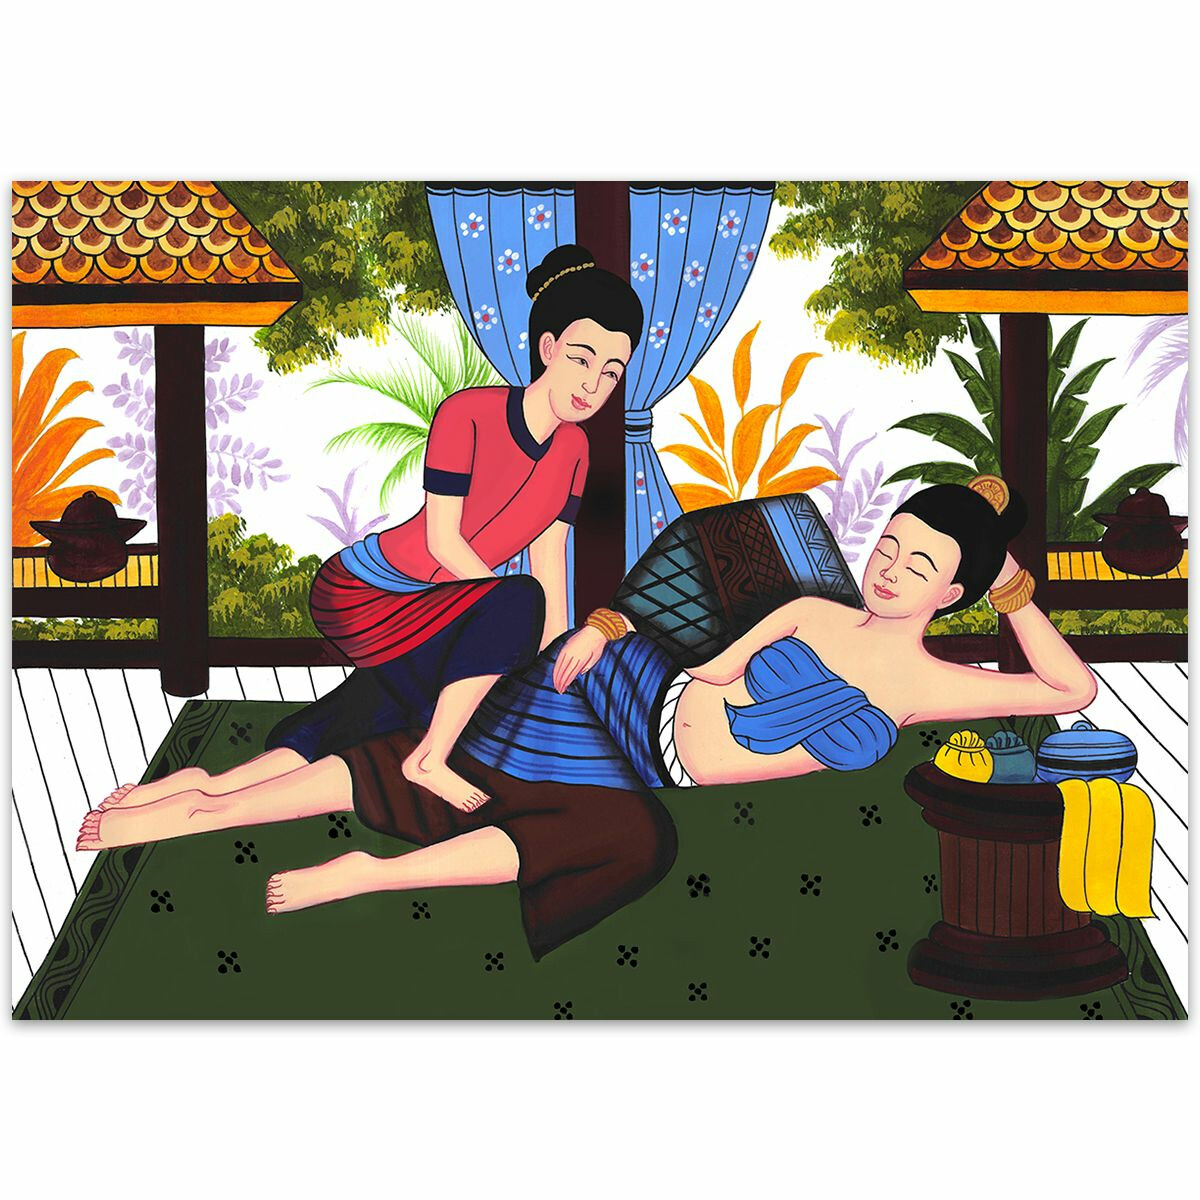 Thai Paintings traditional Thai Massage Siam - No. 17